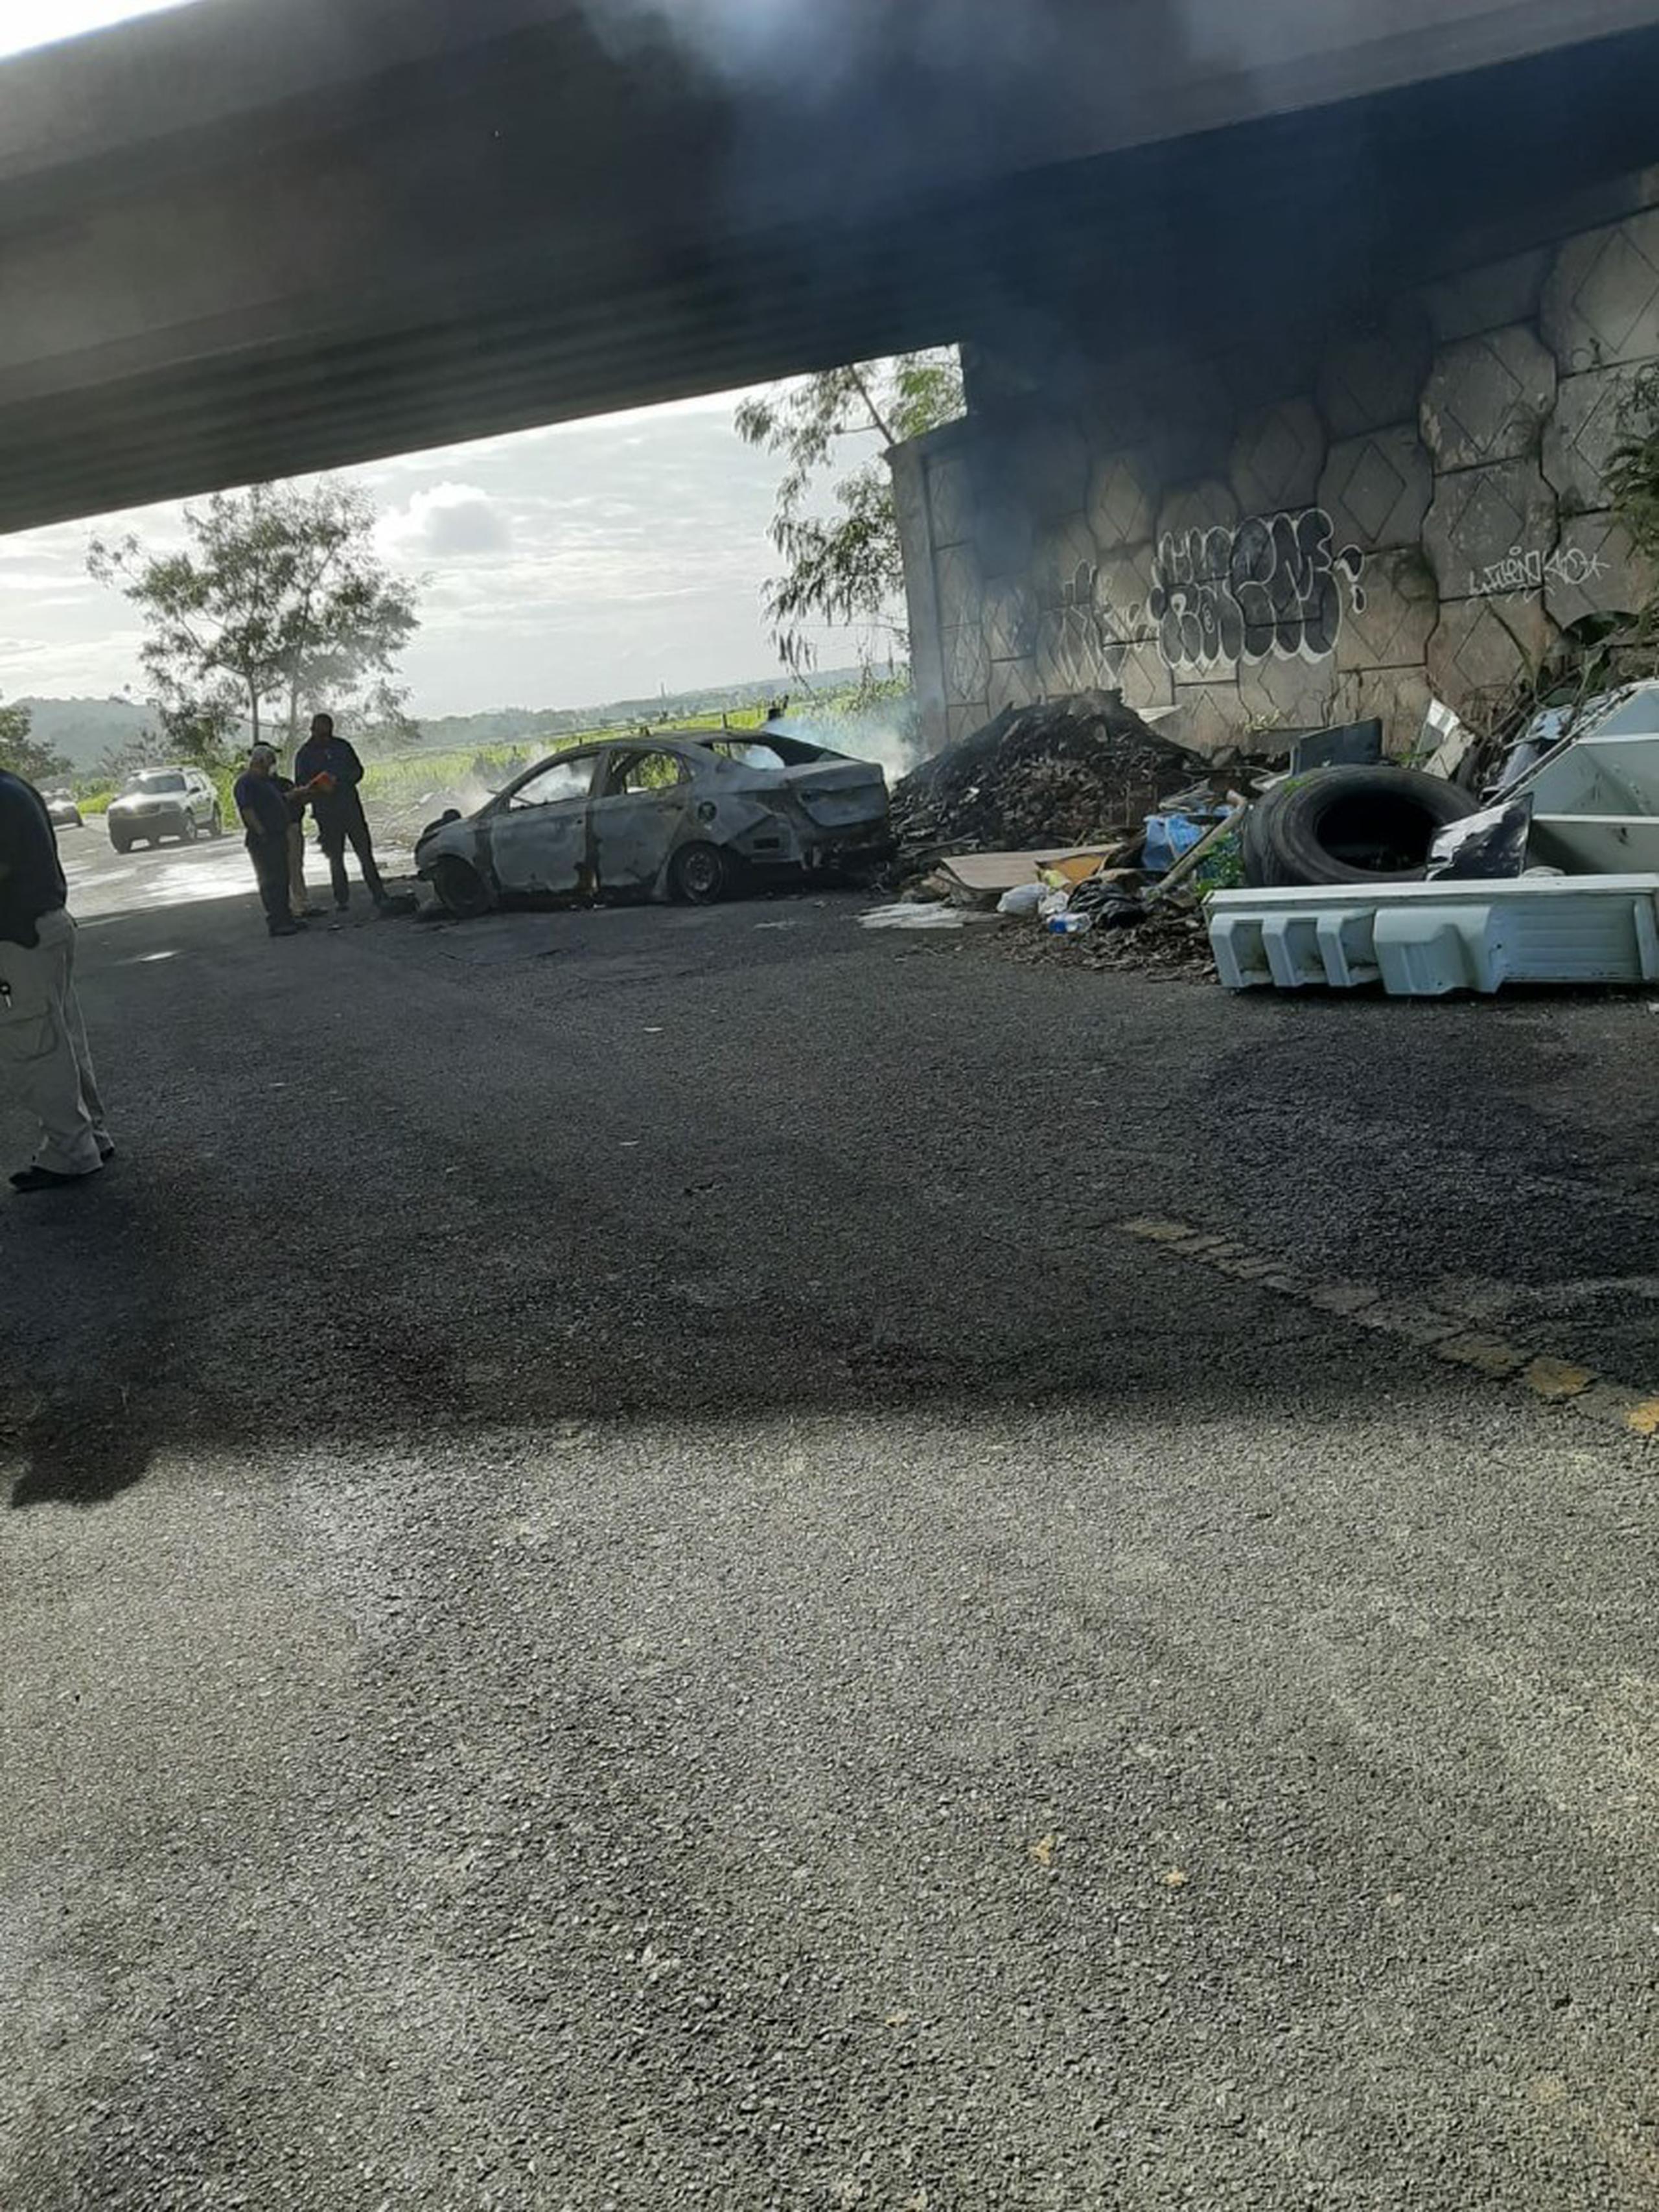 Los cadáveres calcinados de dos hombres fueron localizados esta madrugada dentro de un vehículo en la carretera PR-927 del barrio Mambiche Prieto en Humacao.